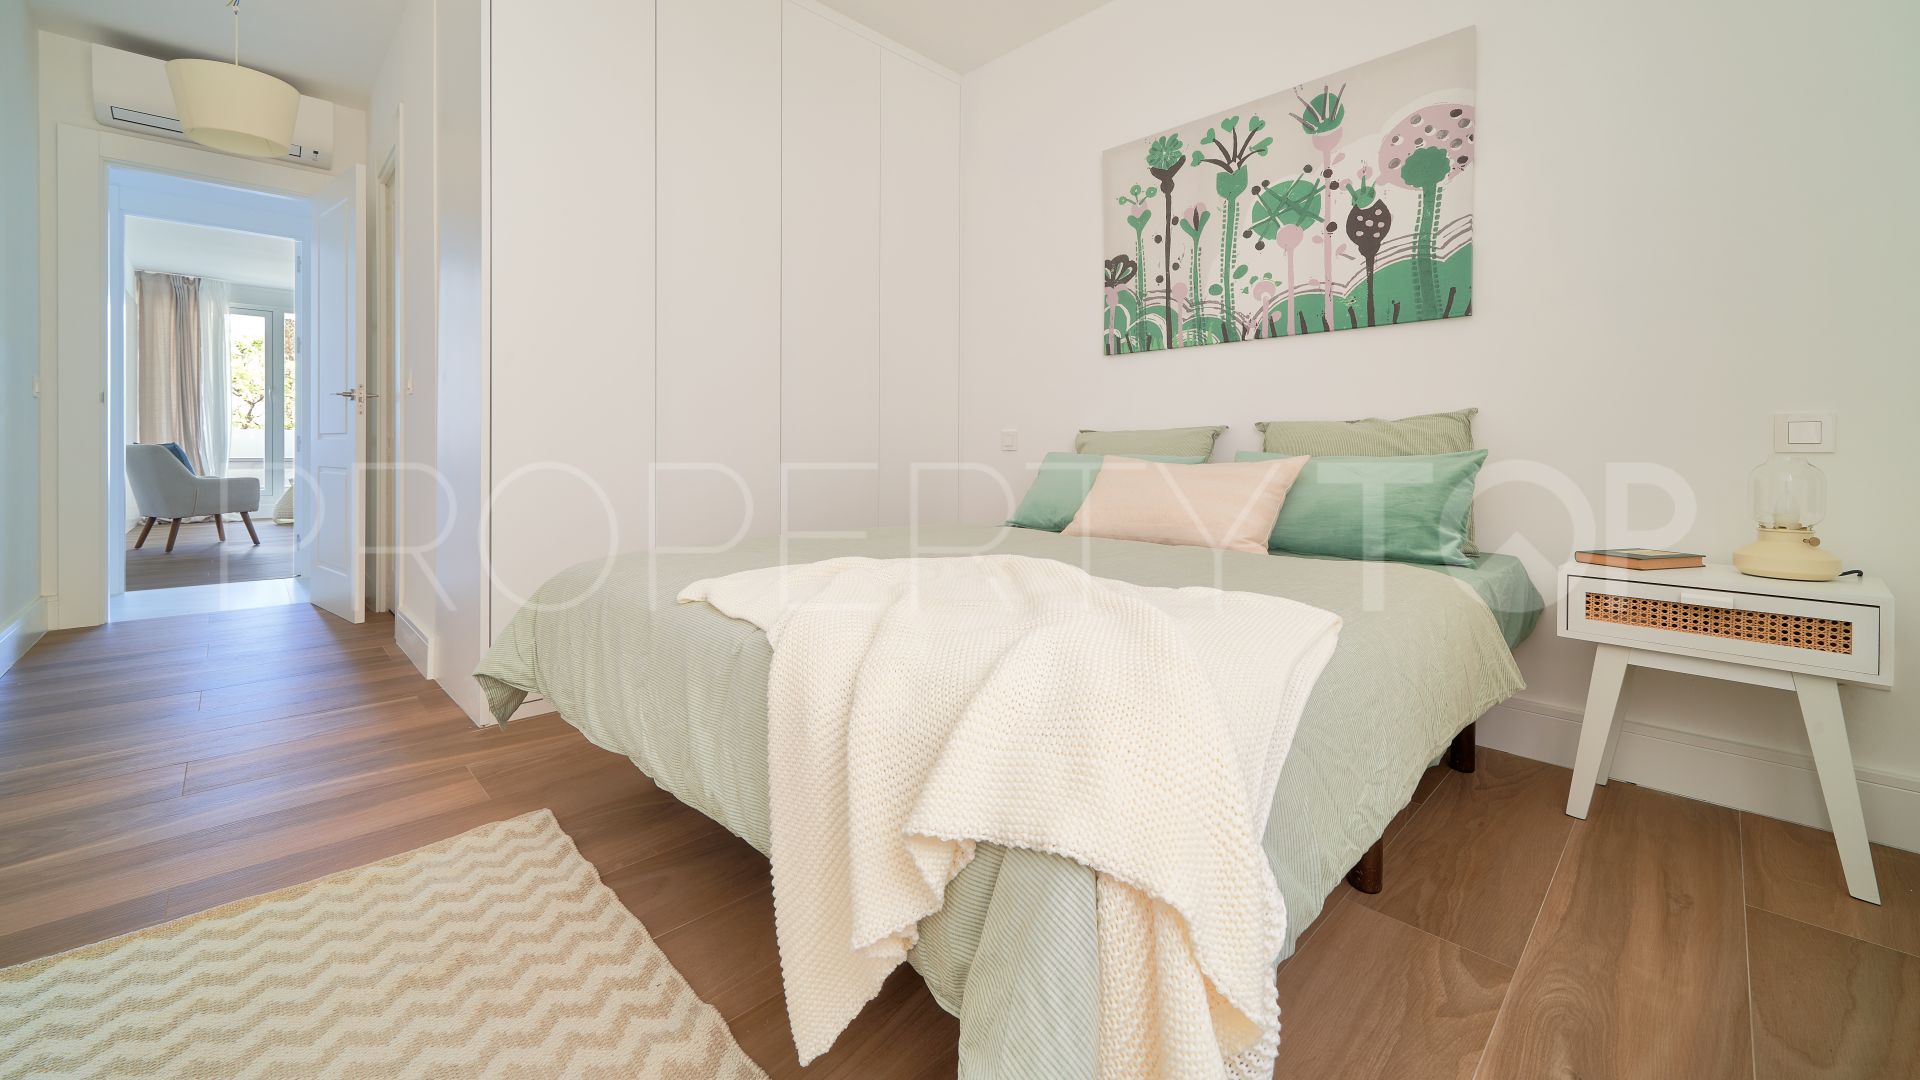 Malaga - Este, apartamento con 4 dormitorios en venta